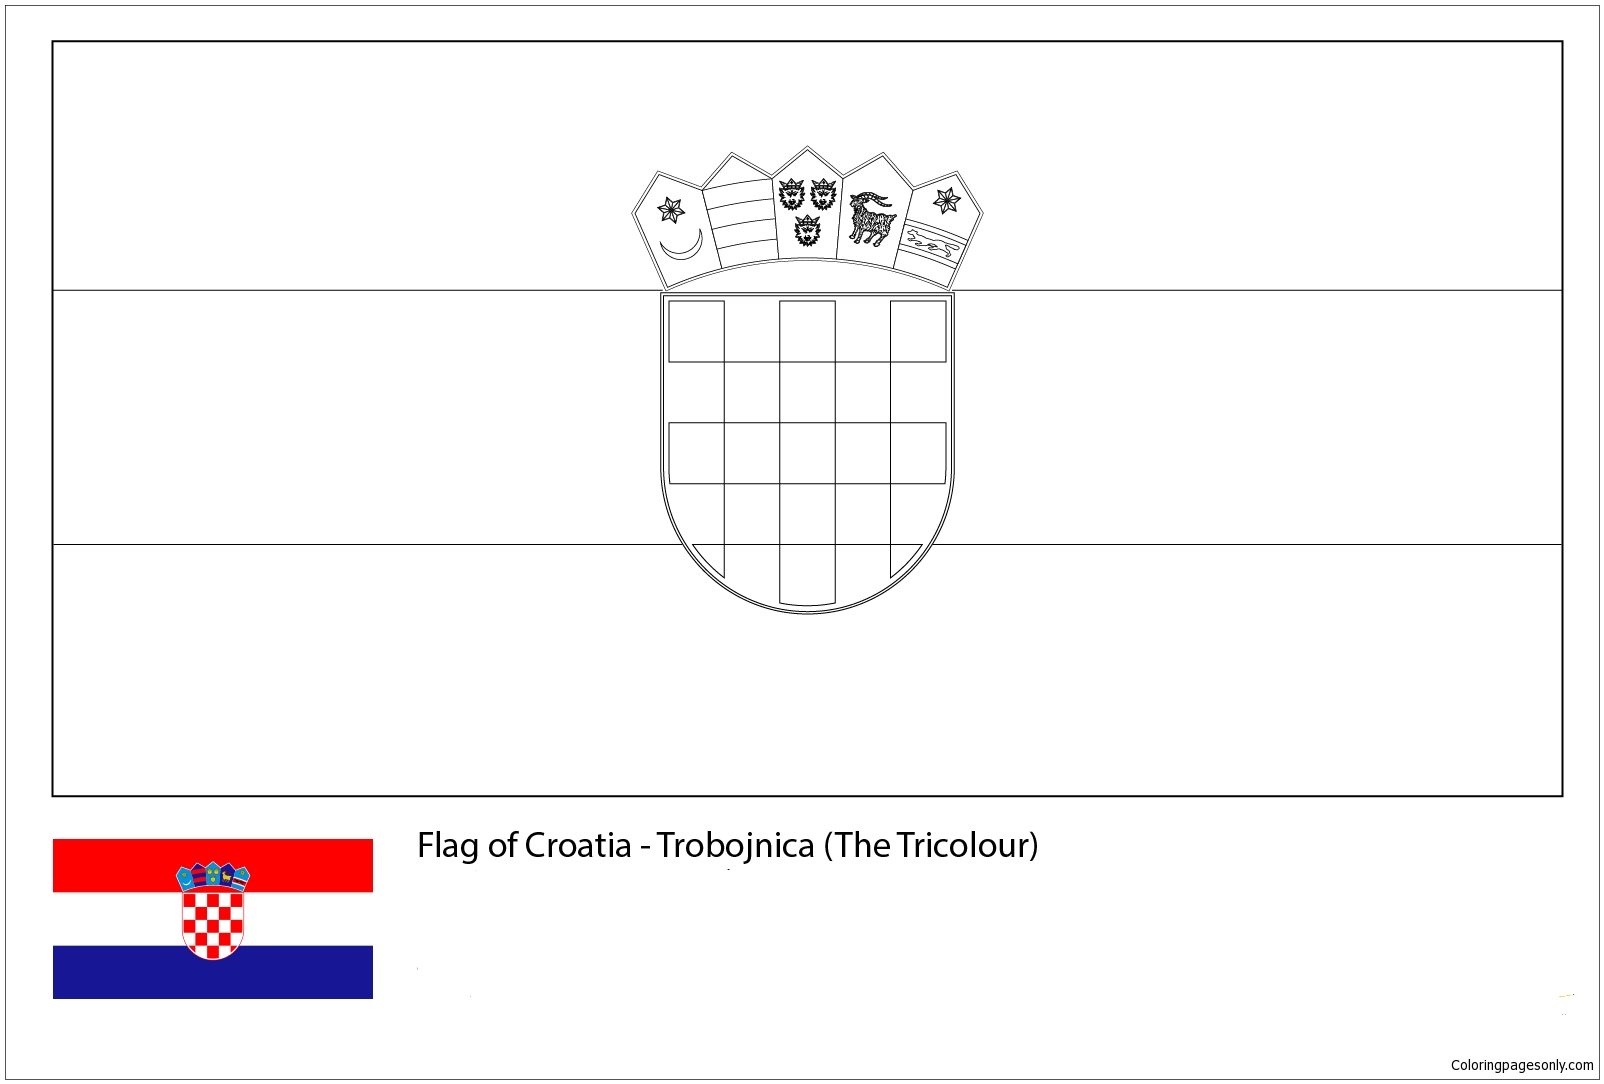 Flagge der Kroatien-Weltmeisterschaft 2018 von der Weltmeisterschaft